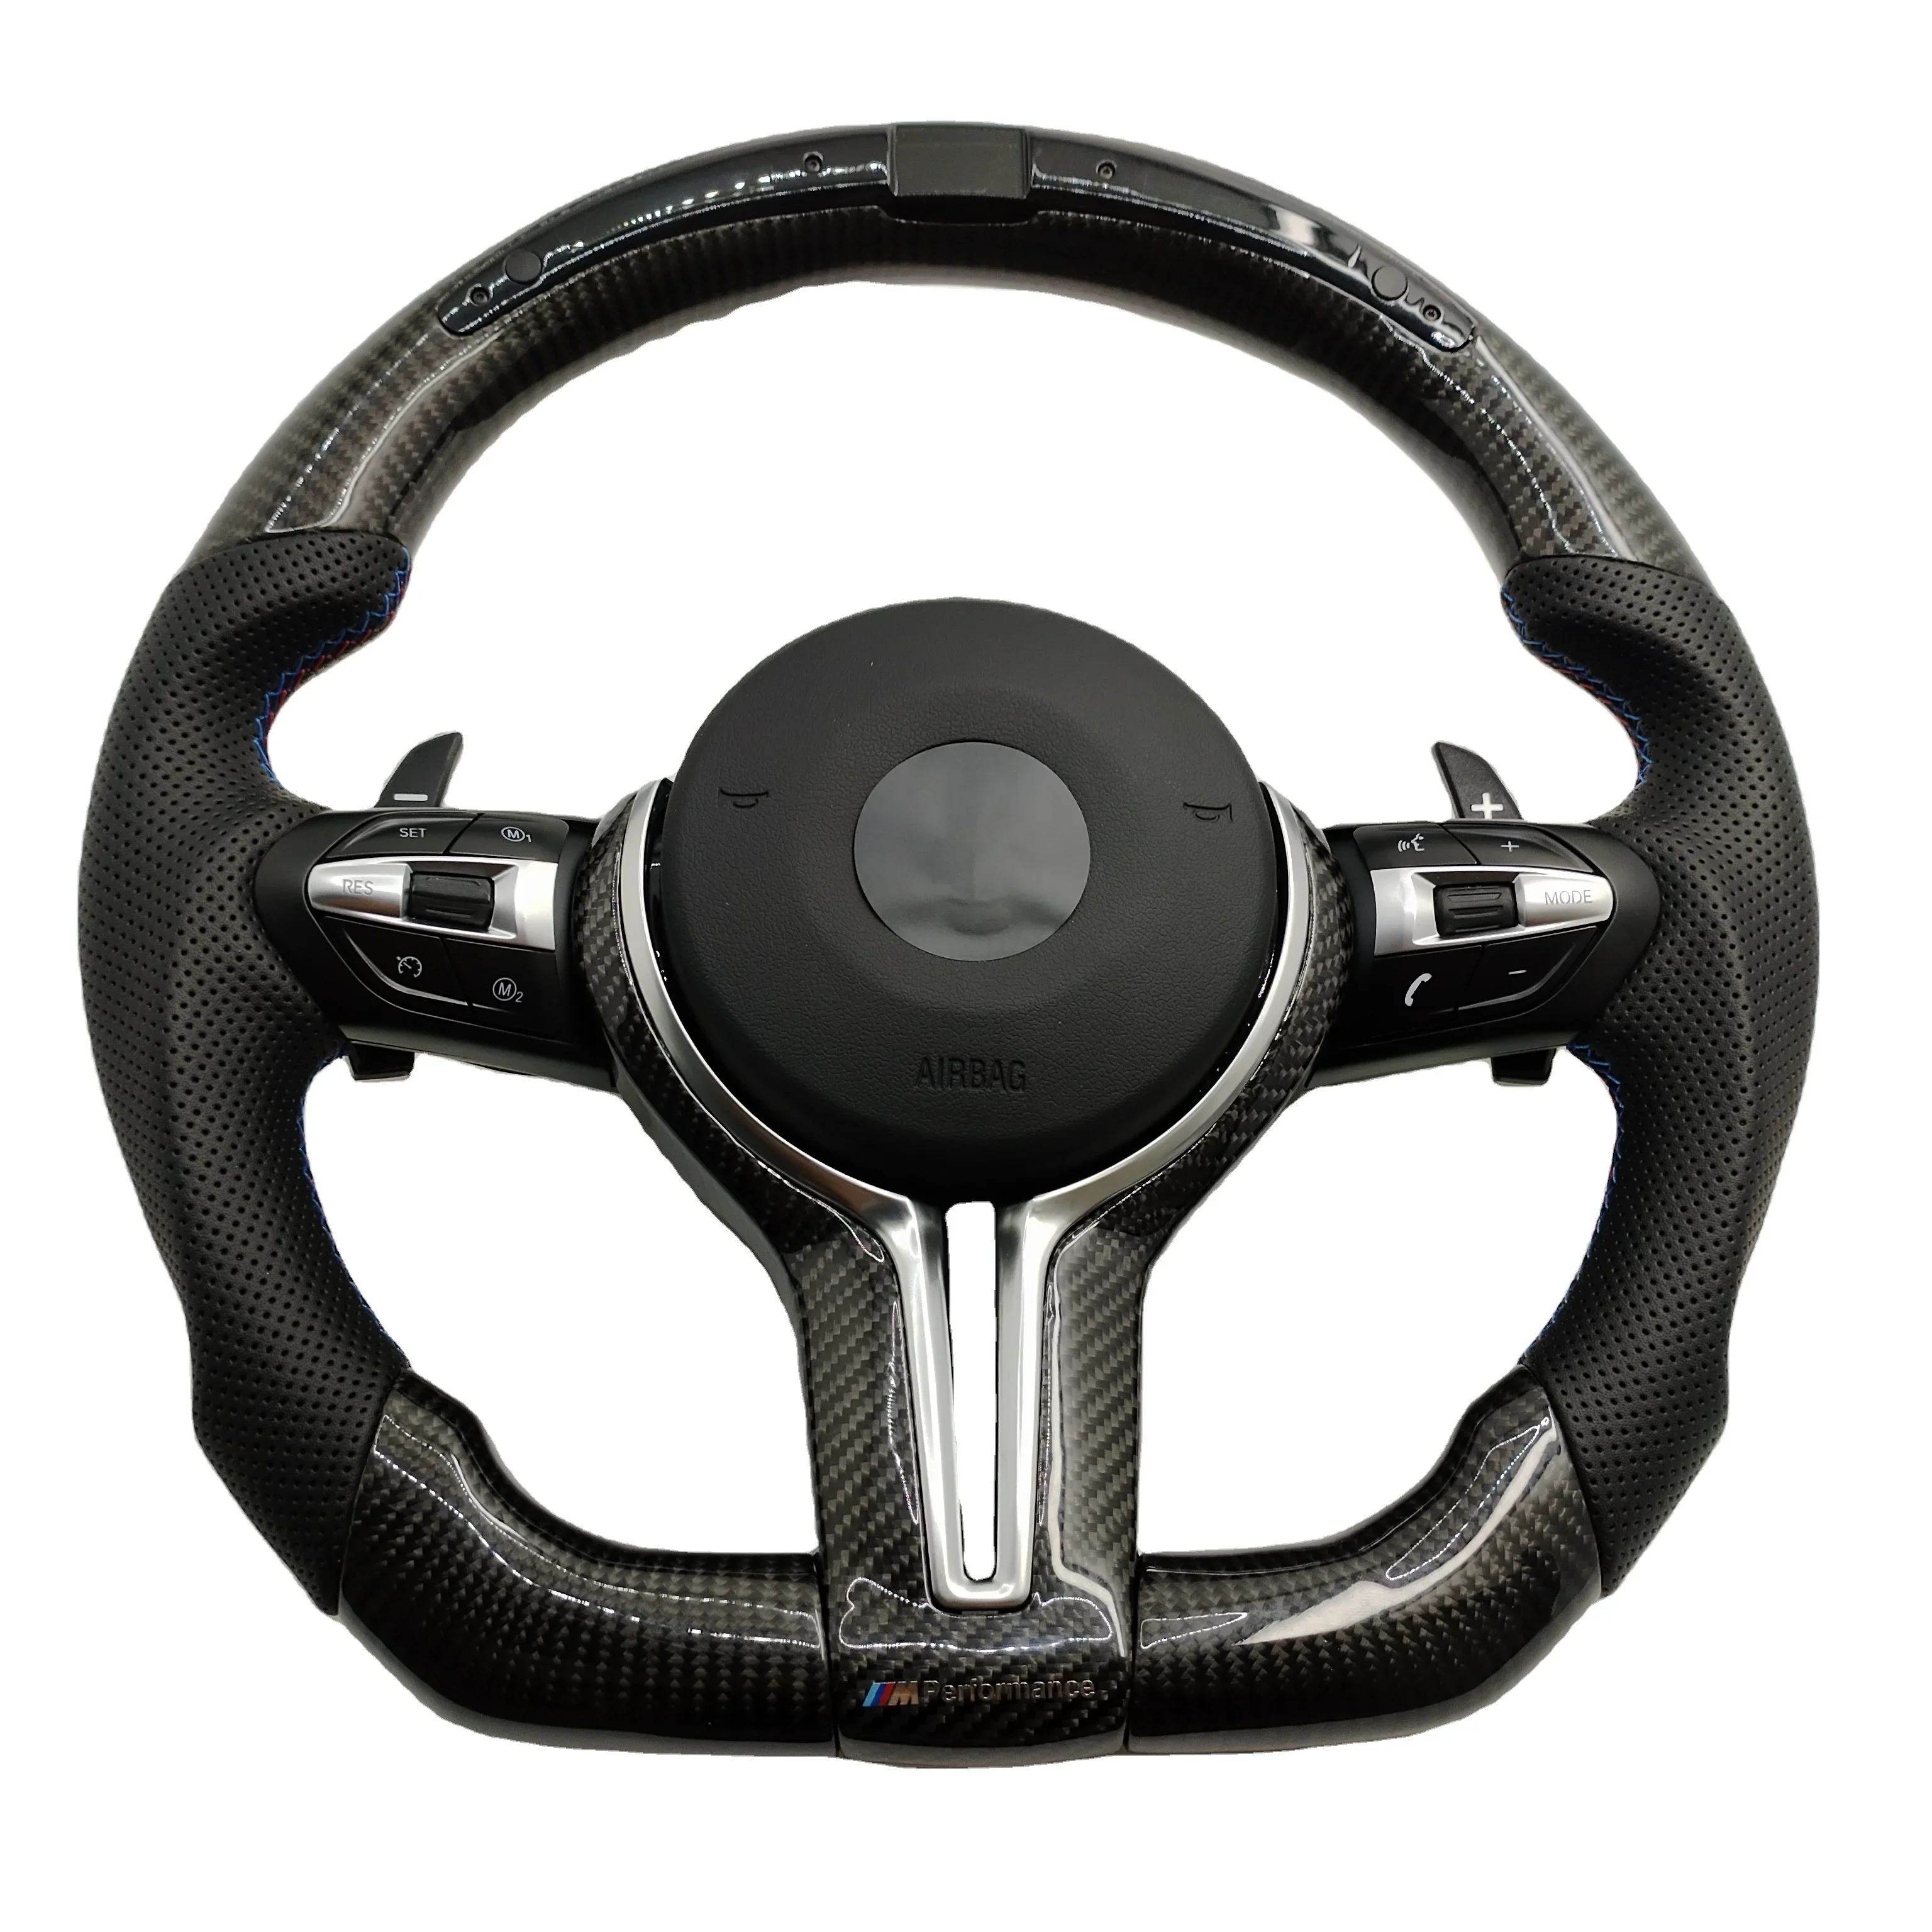 

LED Car Steering Wheel Carbon Fiber For BMW M2 M3 M4 M5 F18 F10 F15 F16 F20 F22 F30 F32 F36 F40 F80 F90 M Performance Sports